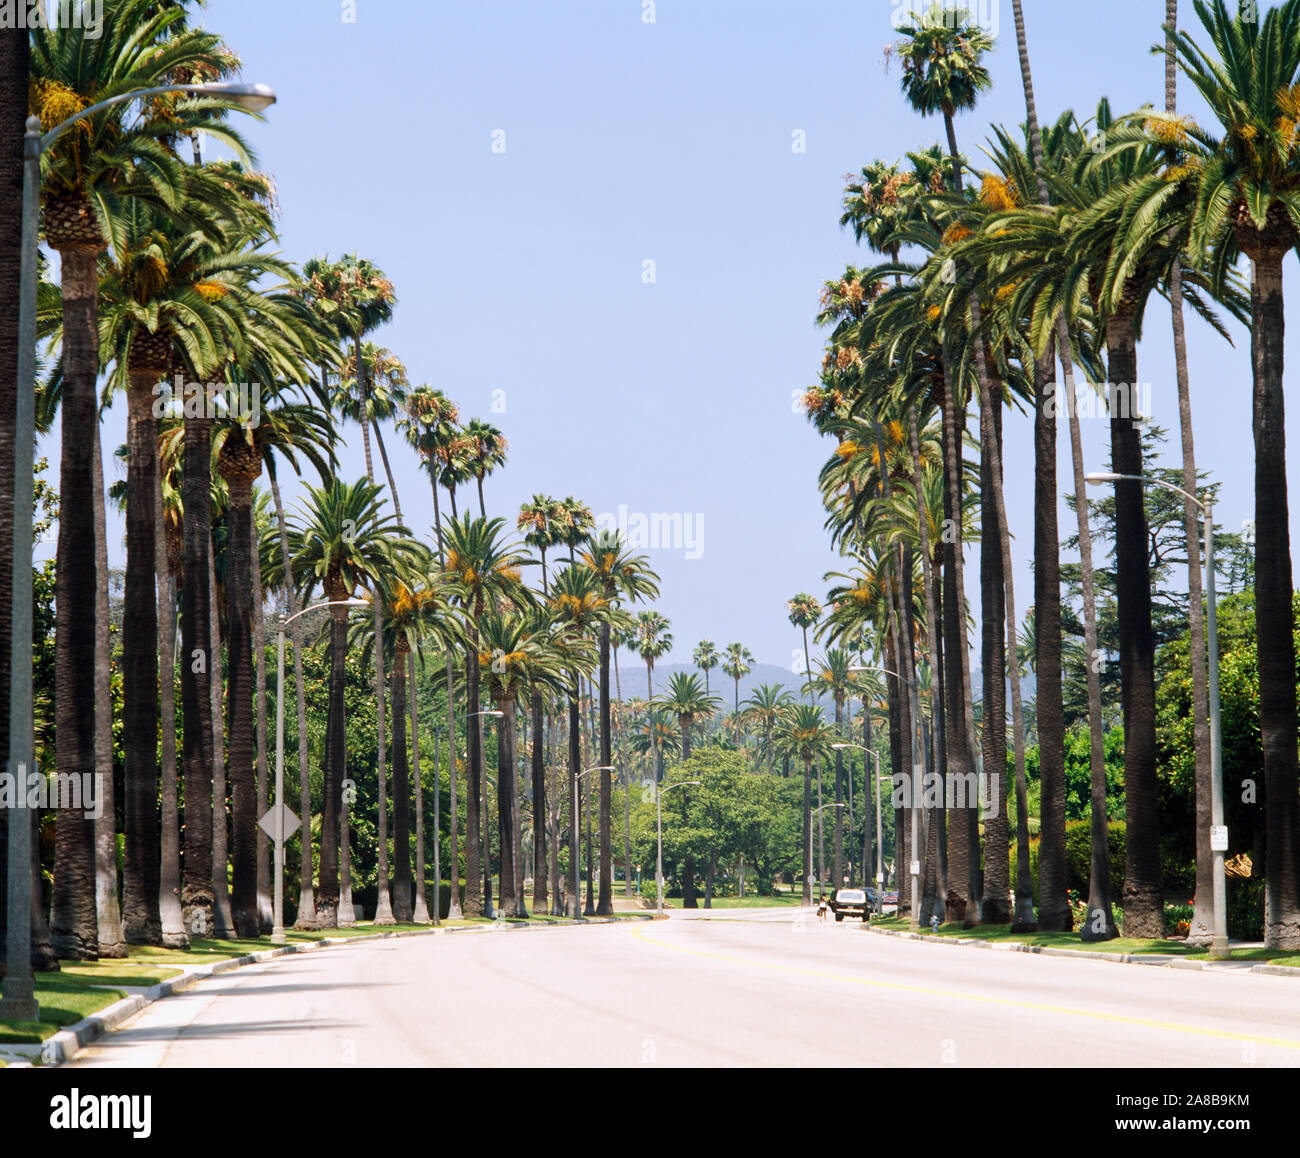 Las palmeras junto a una carretera, la ciudad de Los Ángeles, California, Estados Unidos. Foto de stock